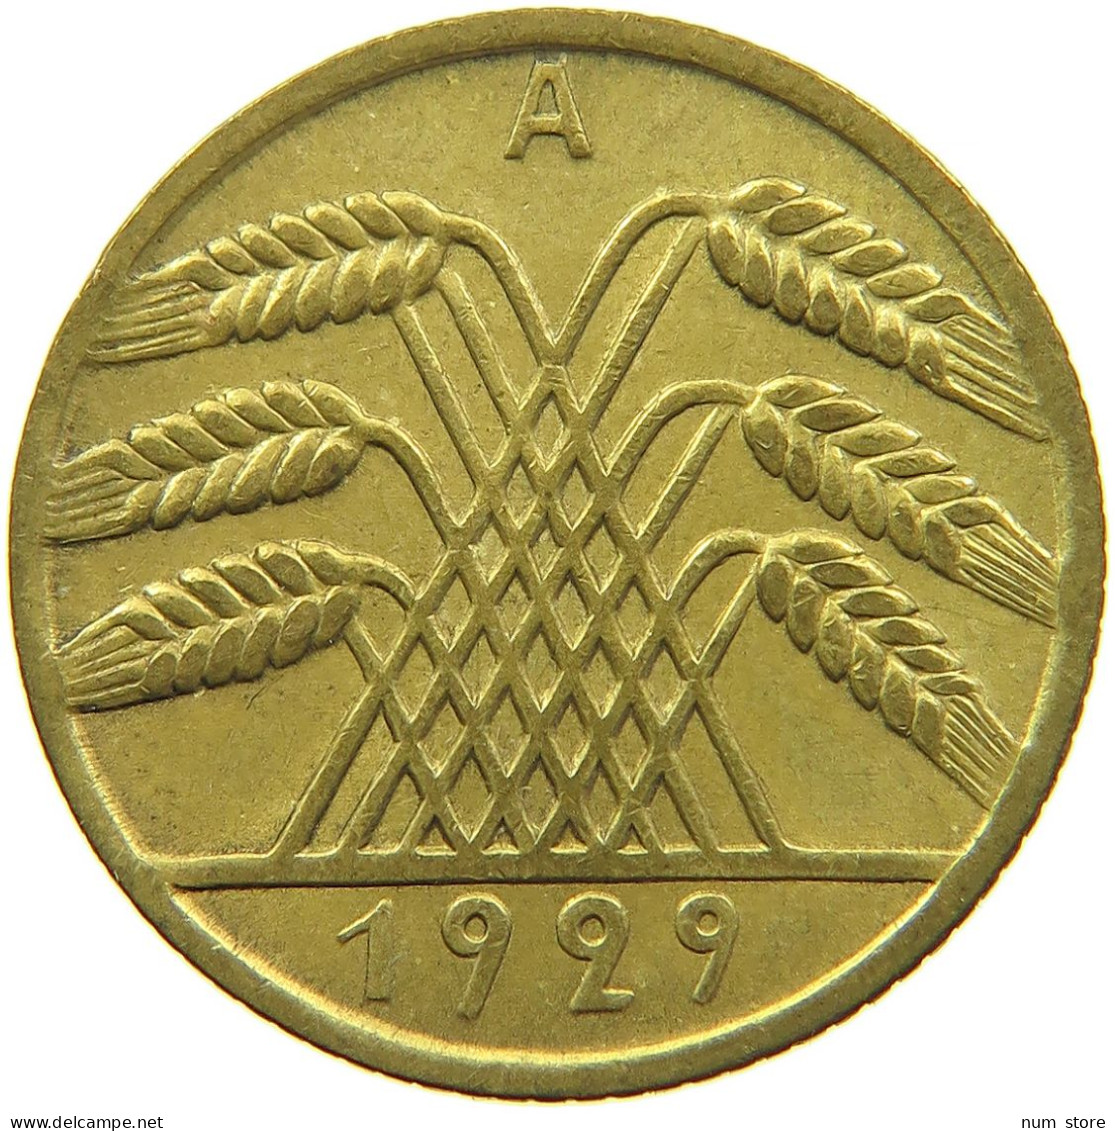 GERMANY WEIMAR 10 REICHSPFENNIG 1929 A #t030 0493 - 10 Rentenpfennig & 10 Reichspfennig